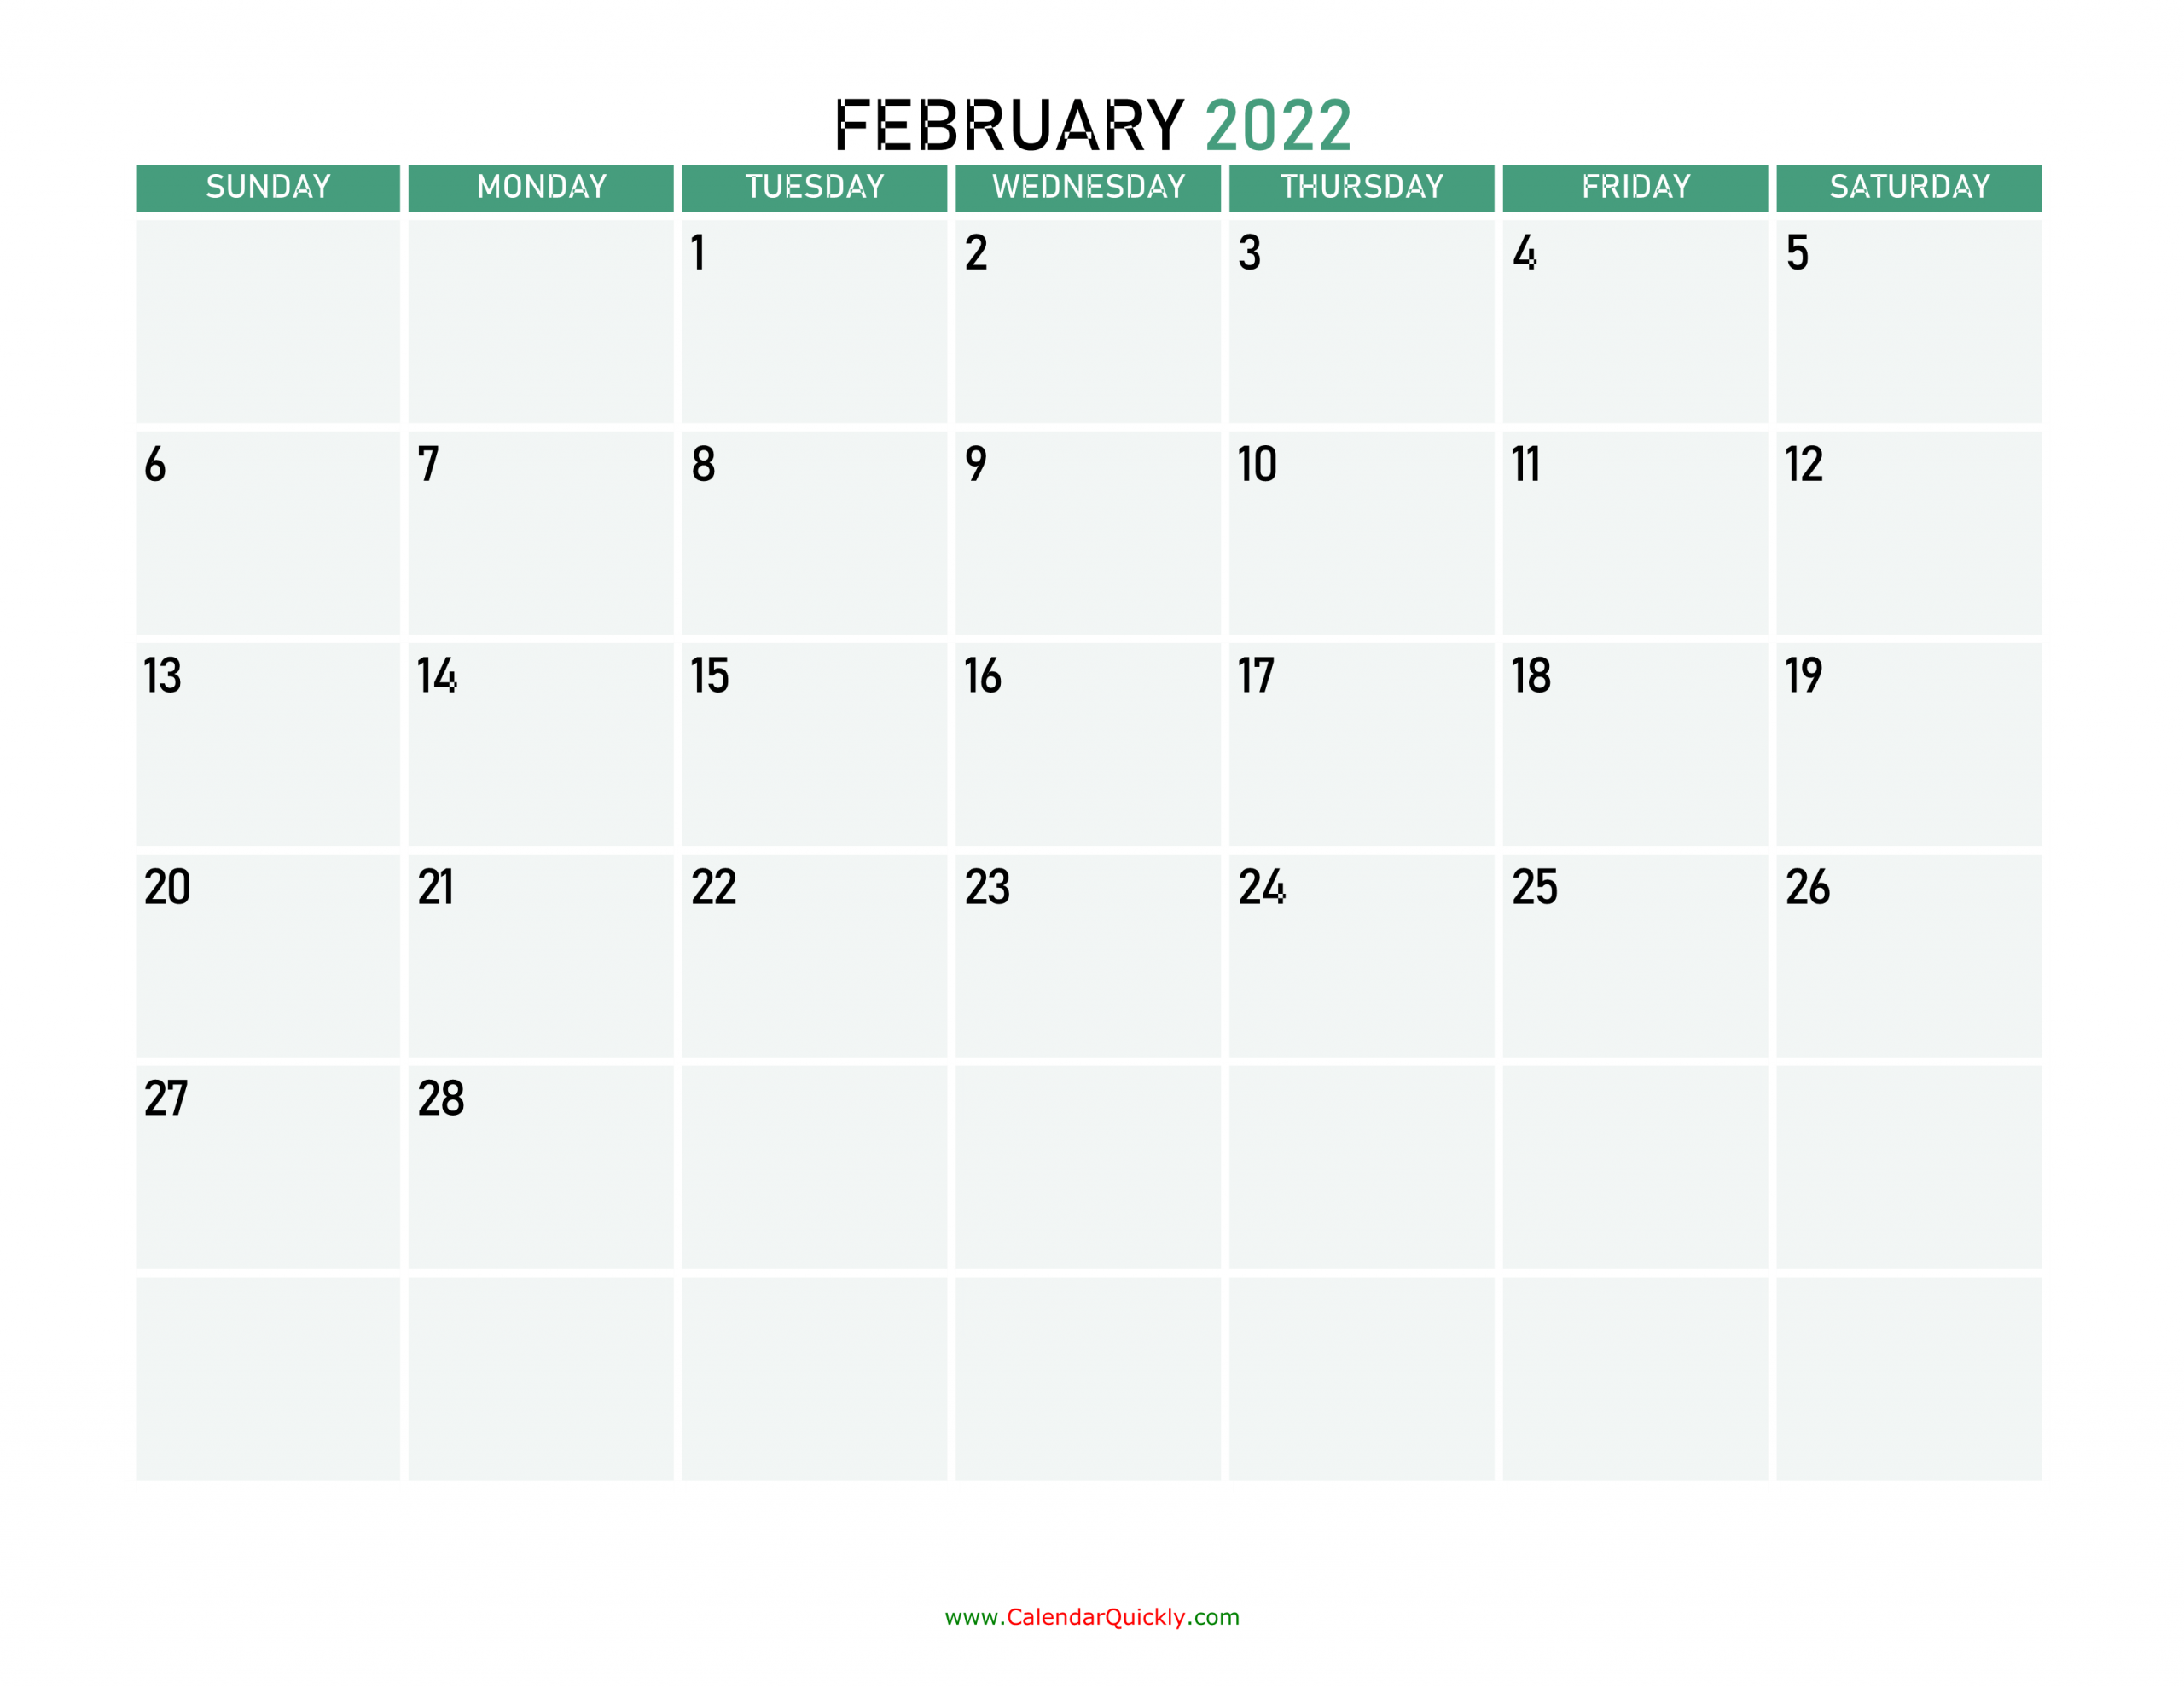 february 2022 printable calendar calendar quickly 2